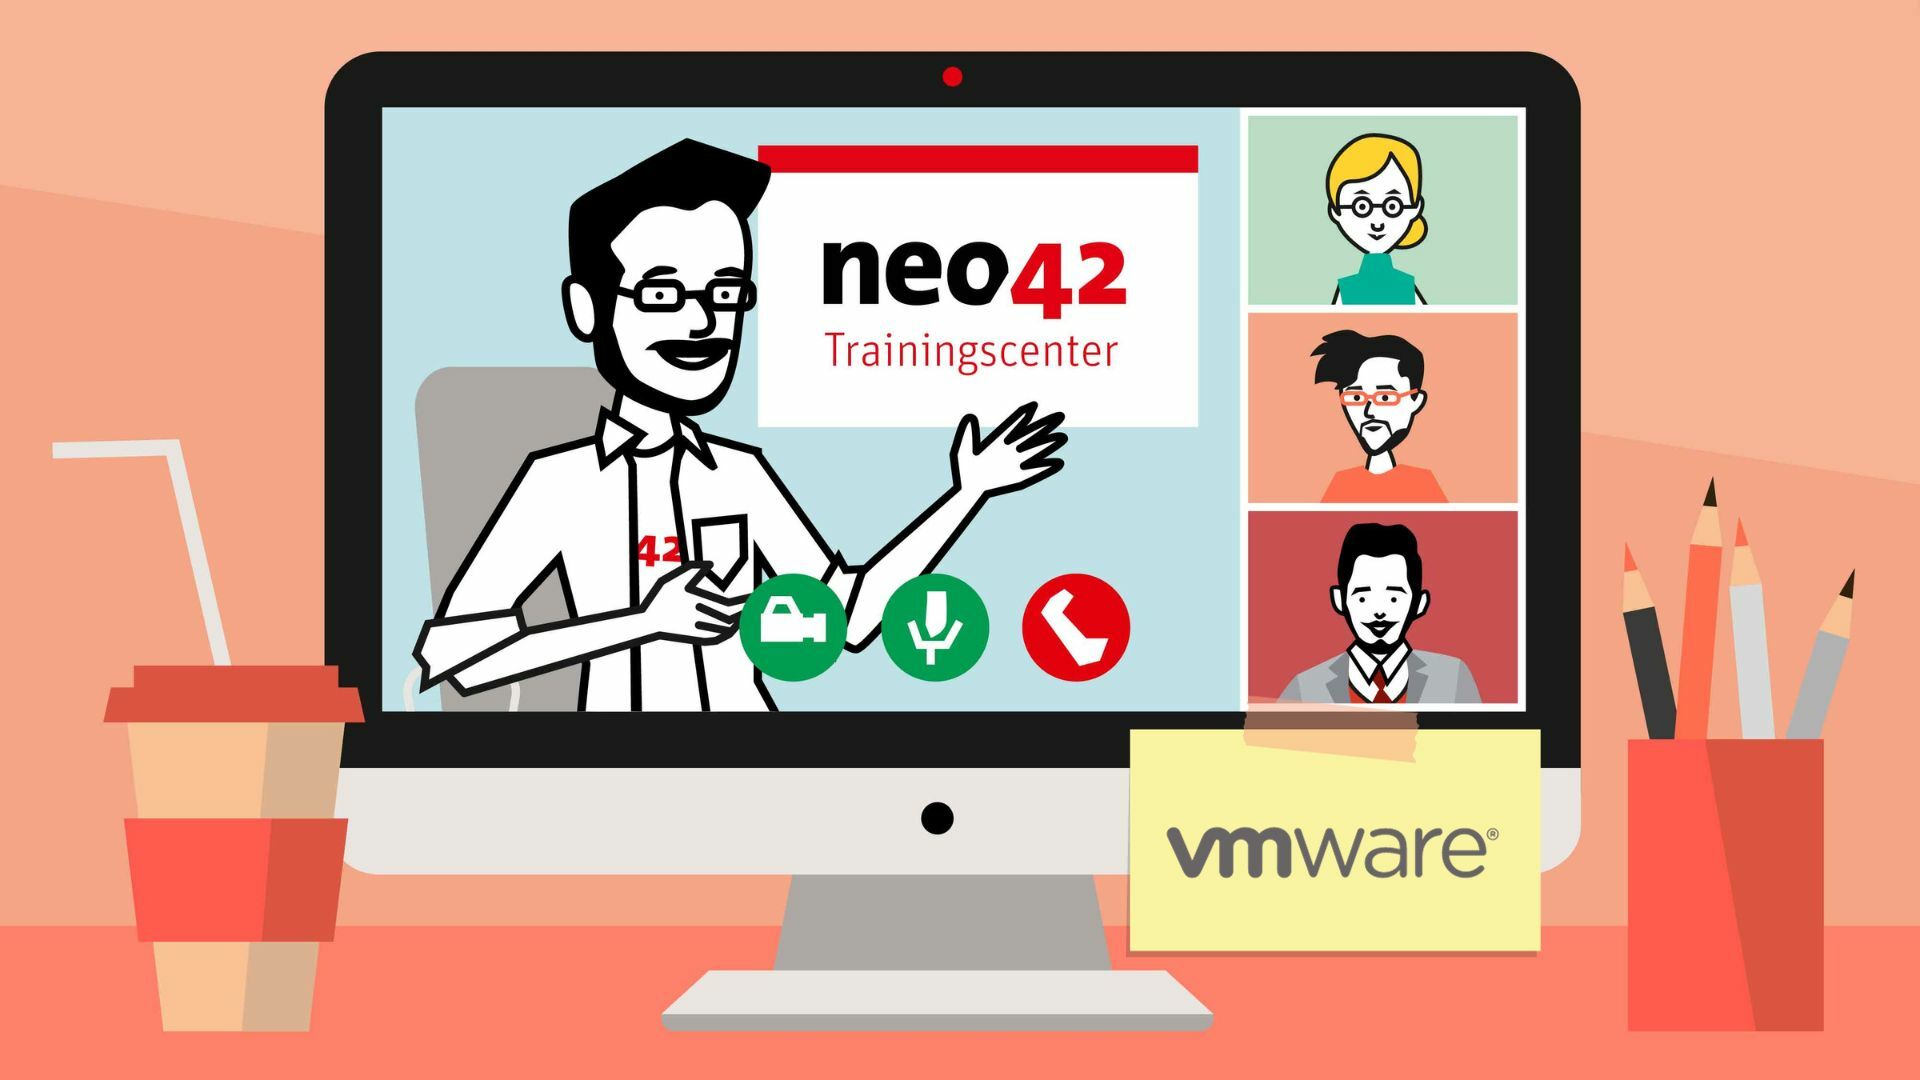 Training VMware Workspace ONE UEM neo42